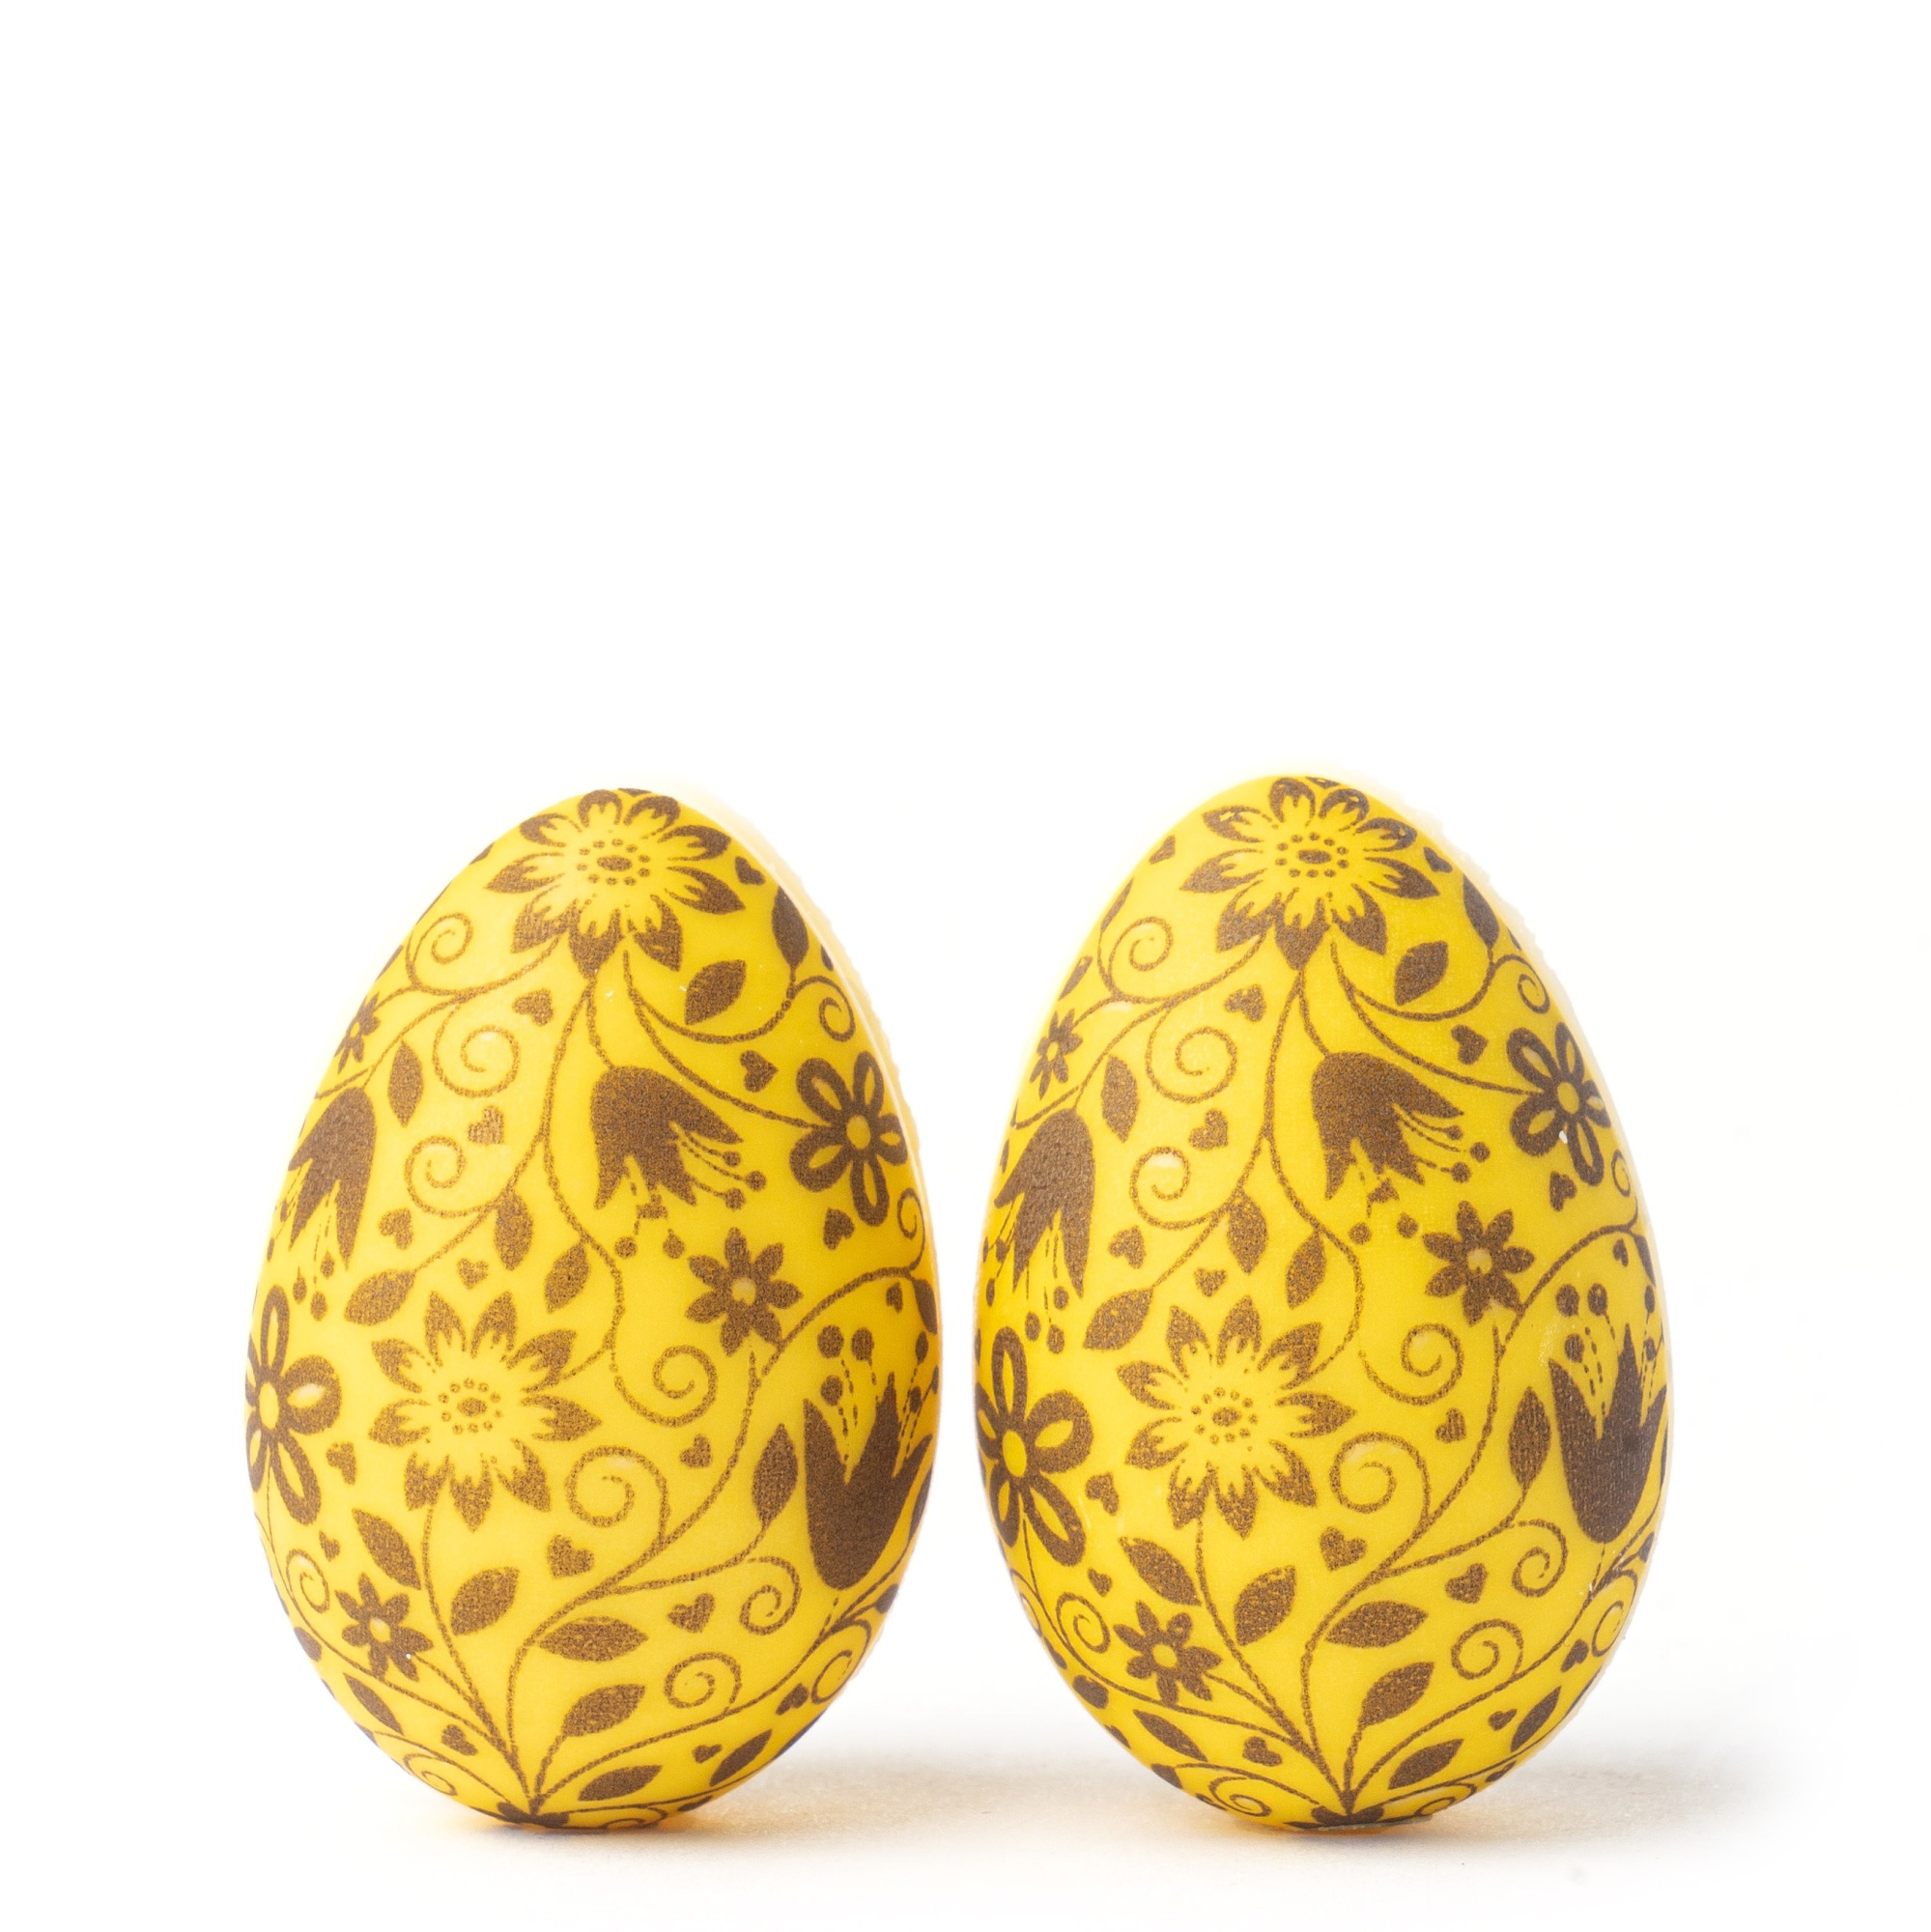 Яйца шоколадные 3D «Цветочная роспись» жёлтые 4х2,7 см, PCB Creation, Франция,  2 шт.  | Фото — Магазин Andy Chef  1